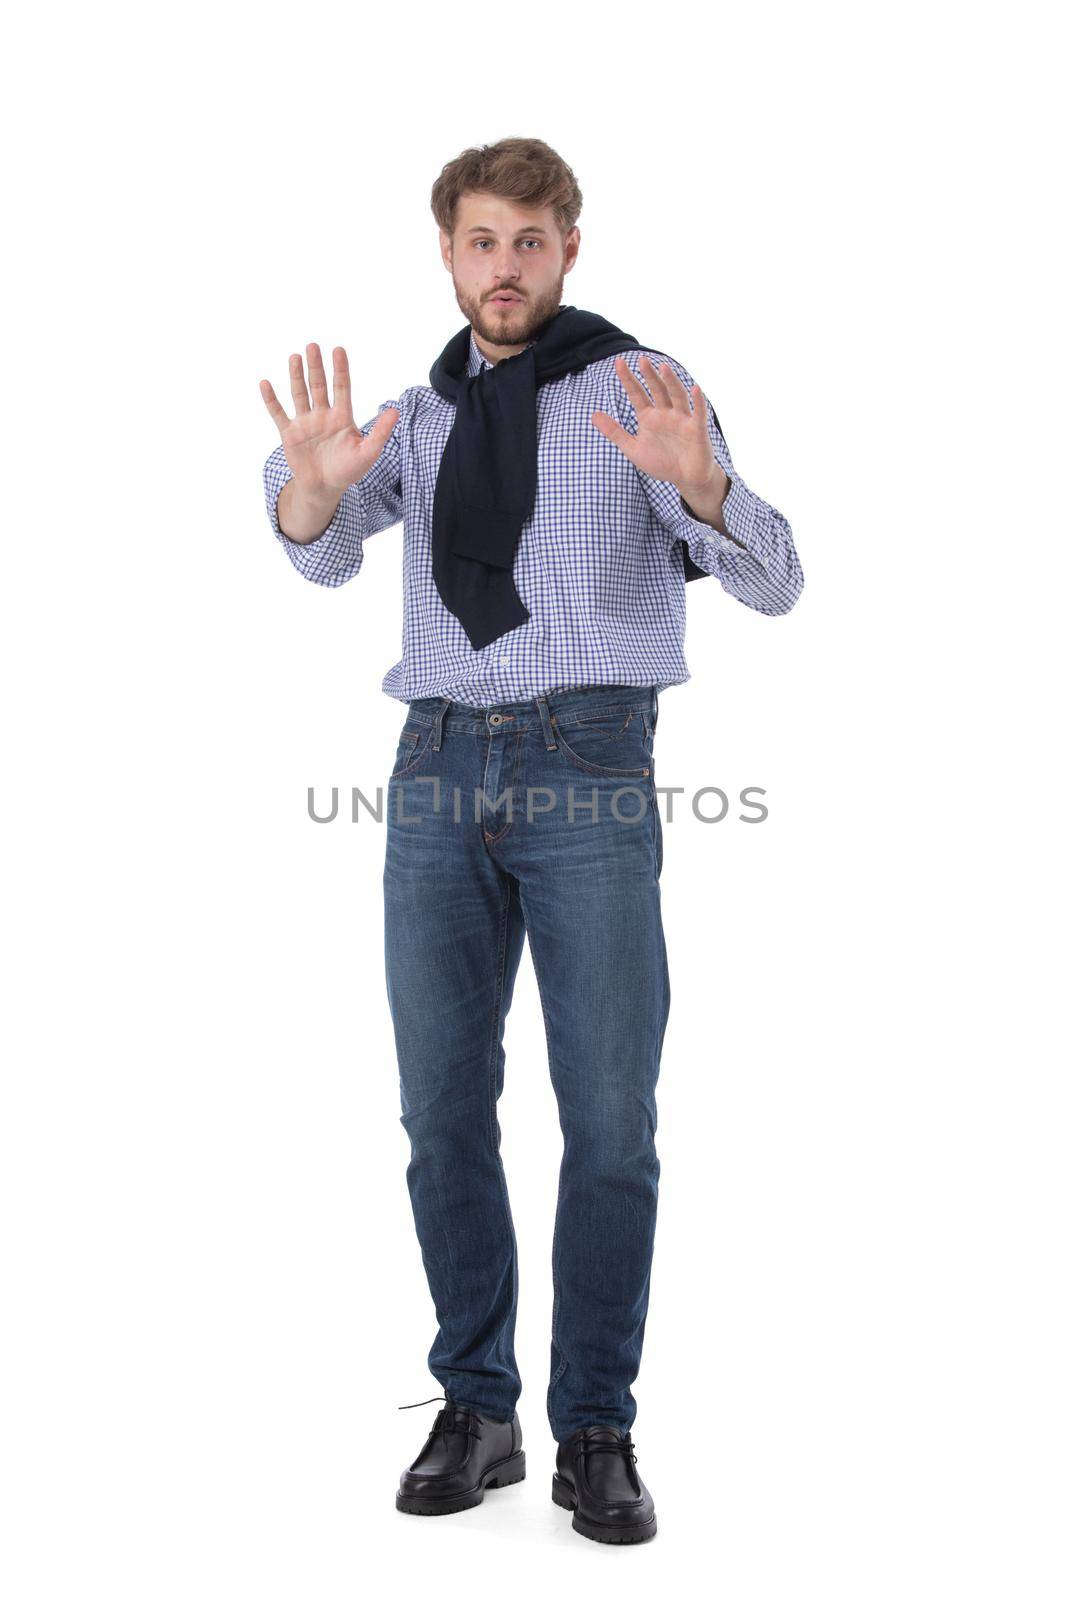 Man making stop gesture by ALotOfPeople